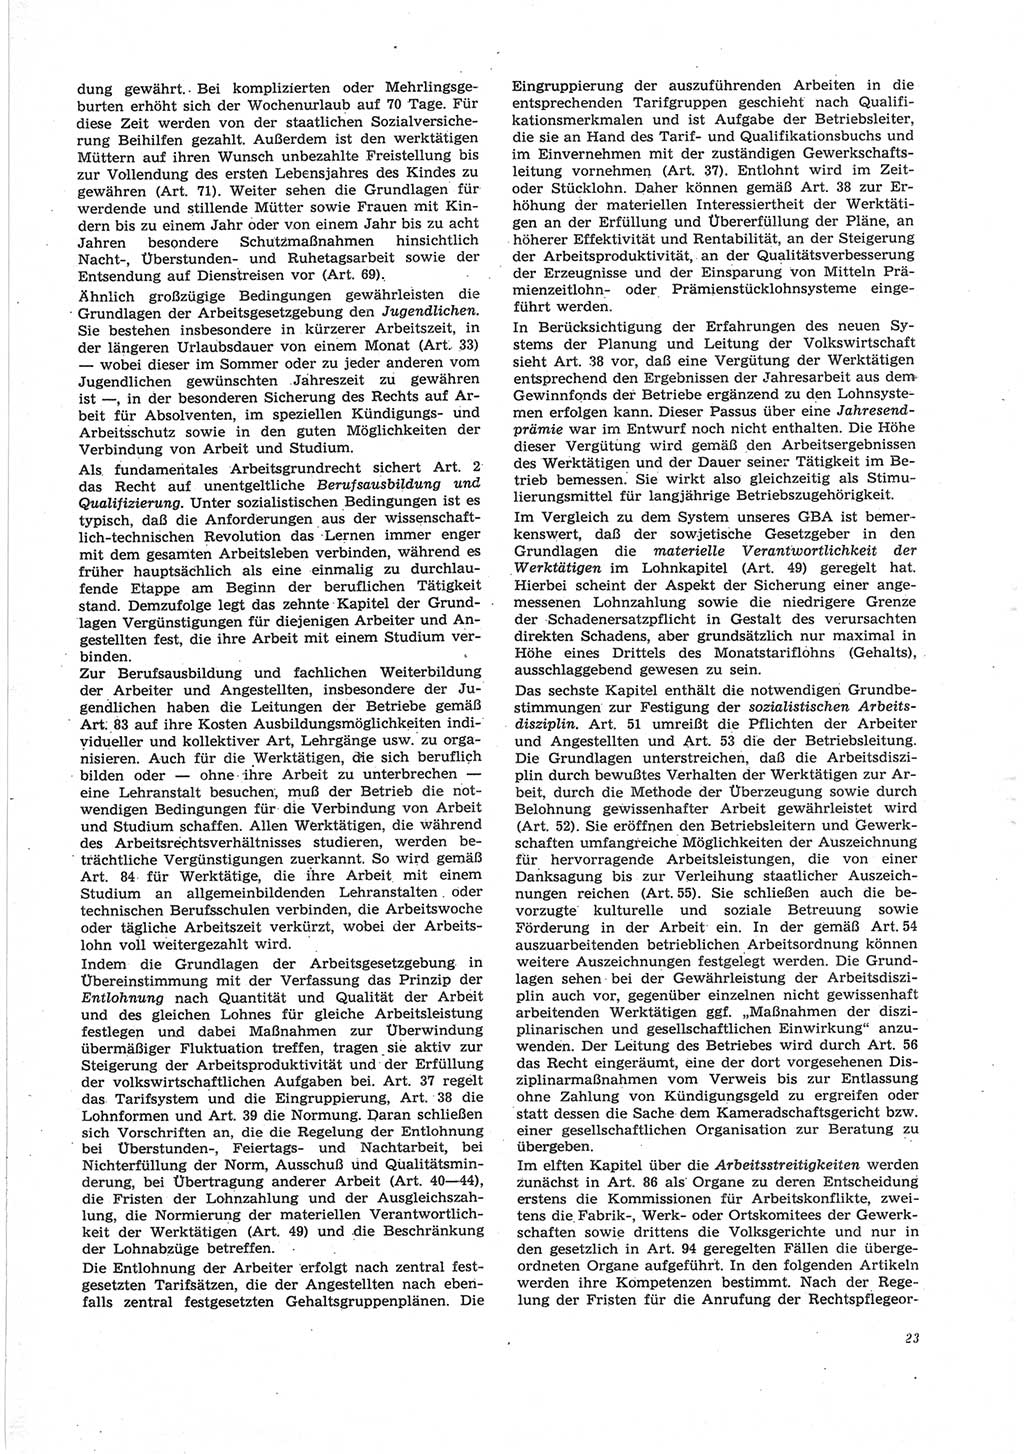 Neue Justiz (NJ), Zeitschrift für Recht und Rechtswissenschaft [Deutsche Demokratische Republik (DDR)], 25. Jahrgang 1971, Seite 23 (NJ DDR 1971, S. 23)